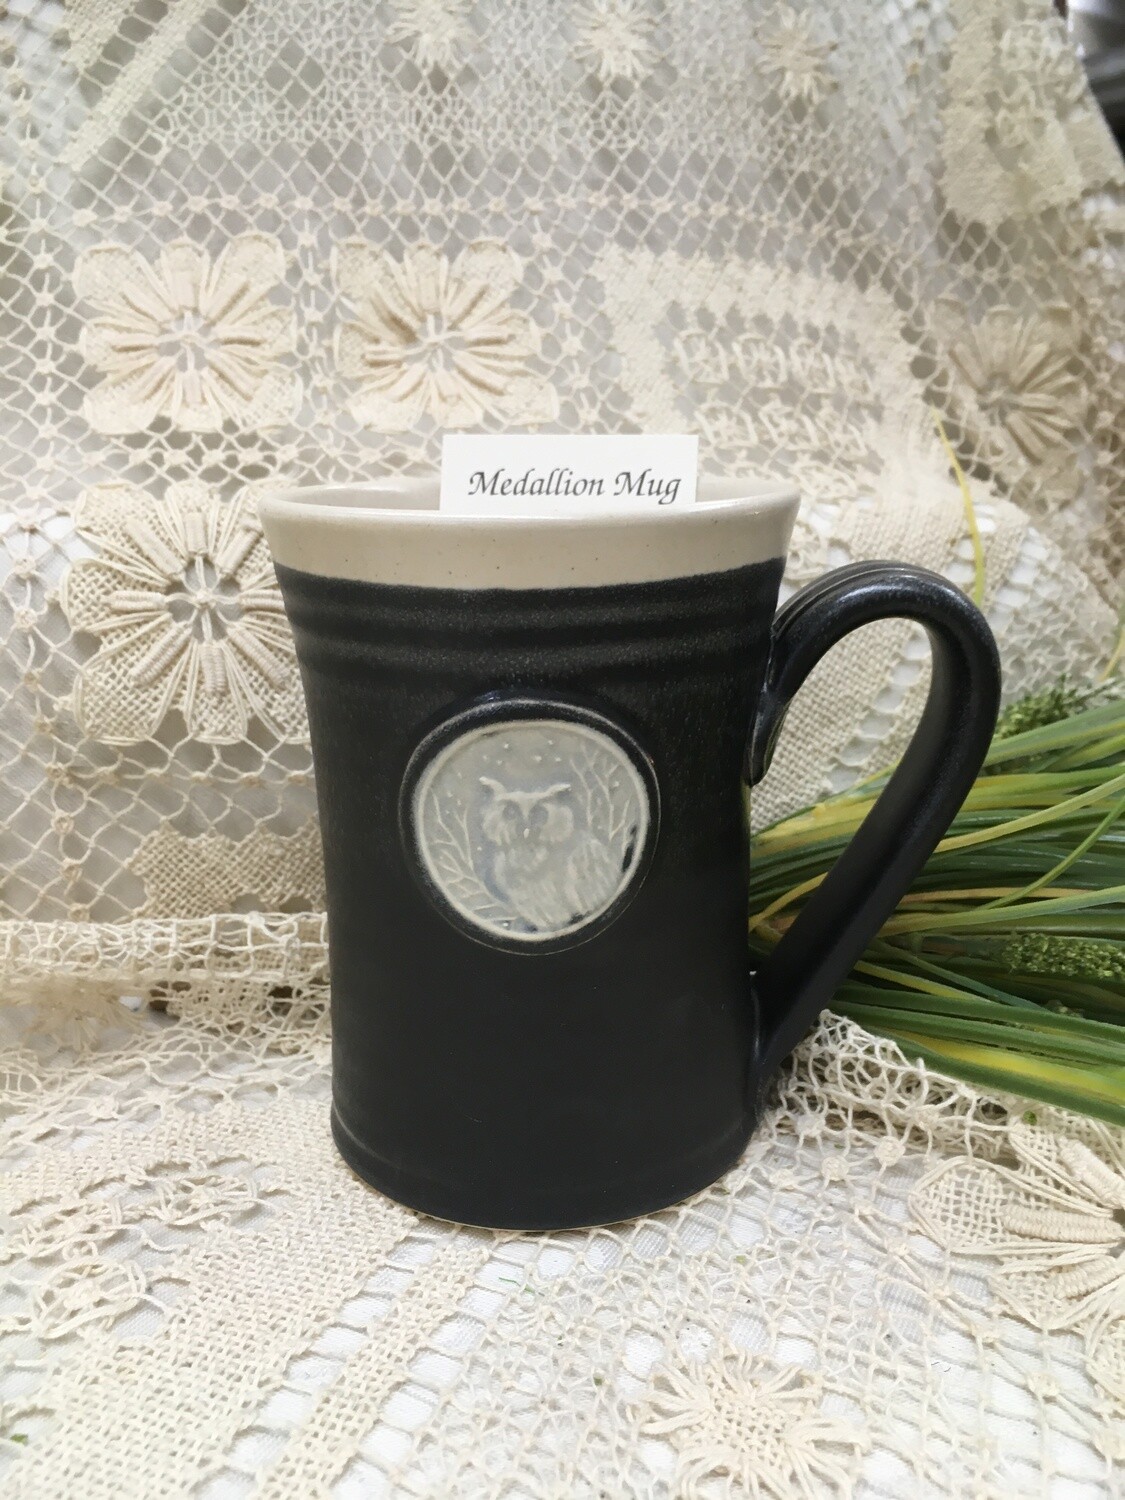 Medallion Large Mug, Owl, Black & White - Pavlo Pottery - Canadian Handmade